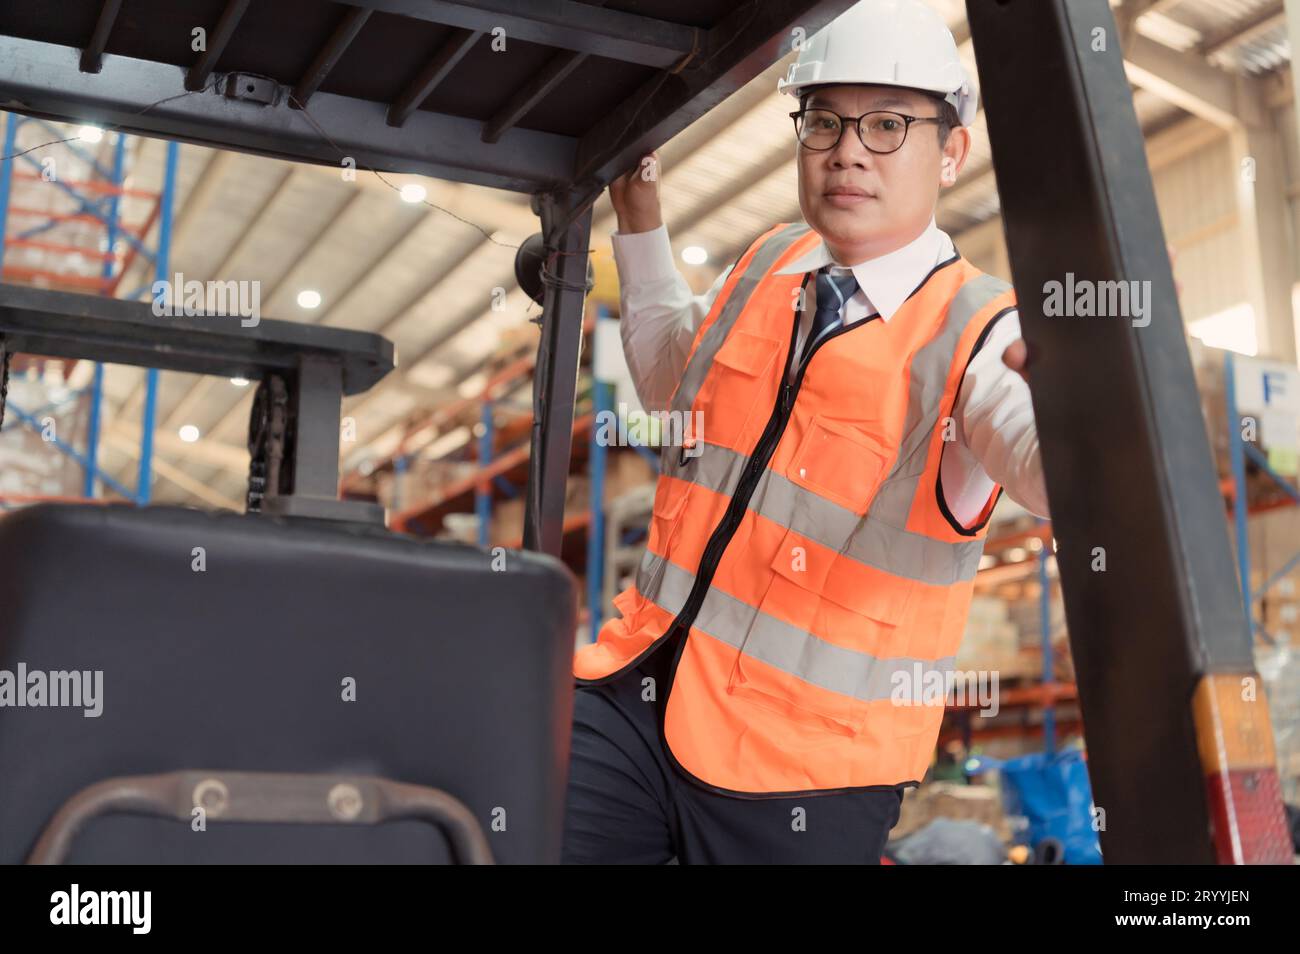 Le gestionnaire d'entrepôt examine l'équipement utilisé pour déplacer les marchandises dans l'entrepôt et fait l'essai routier d'un chariot élévateur. Banque D'Images